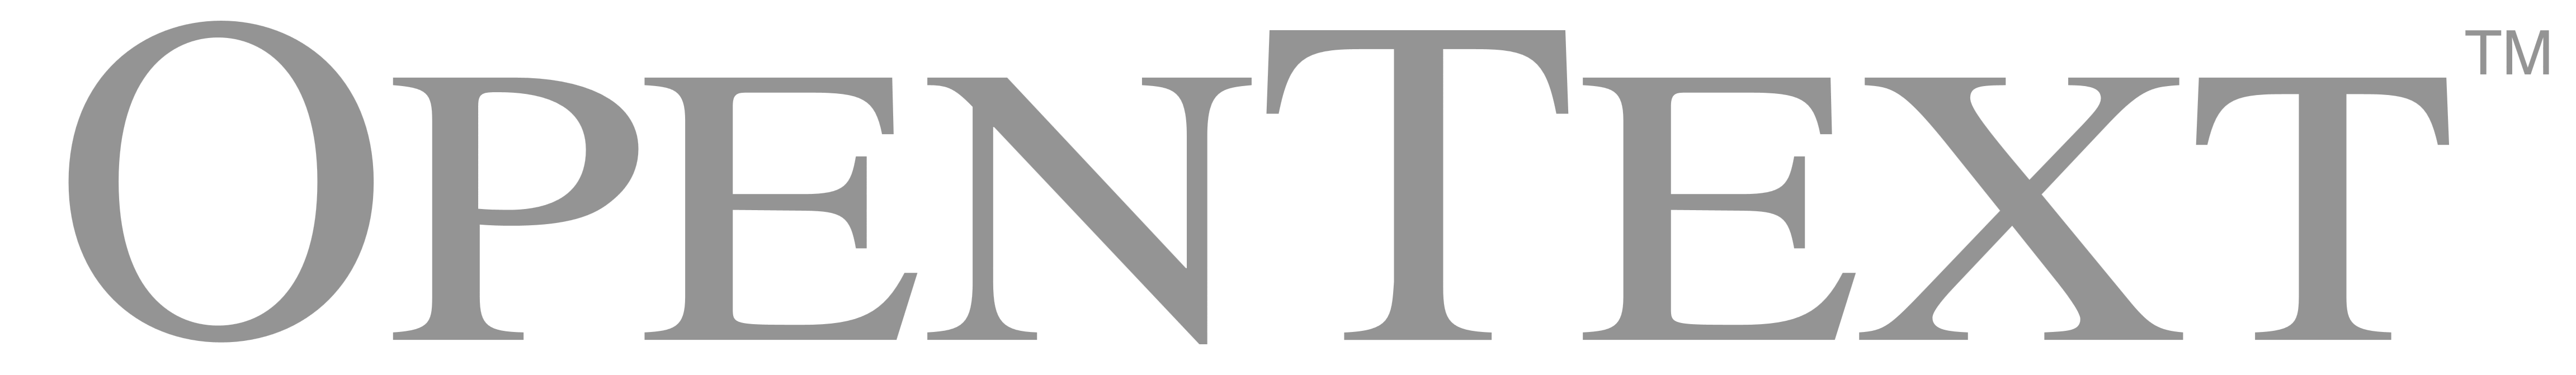 opentext logo gray